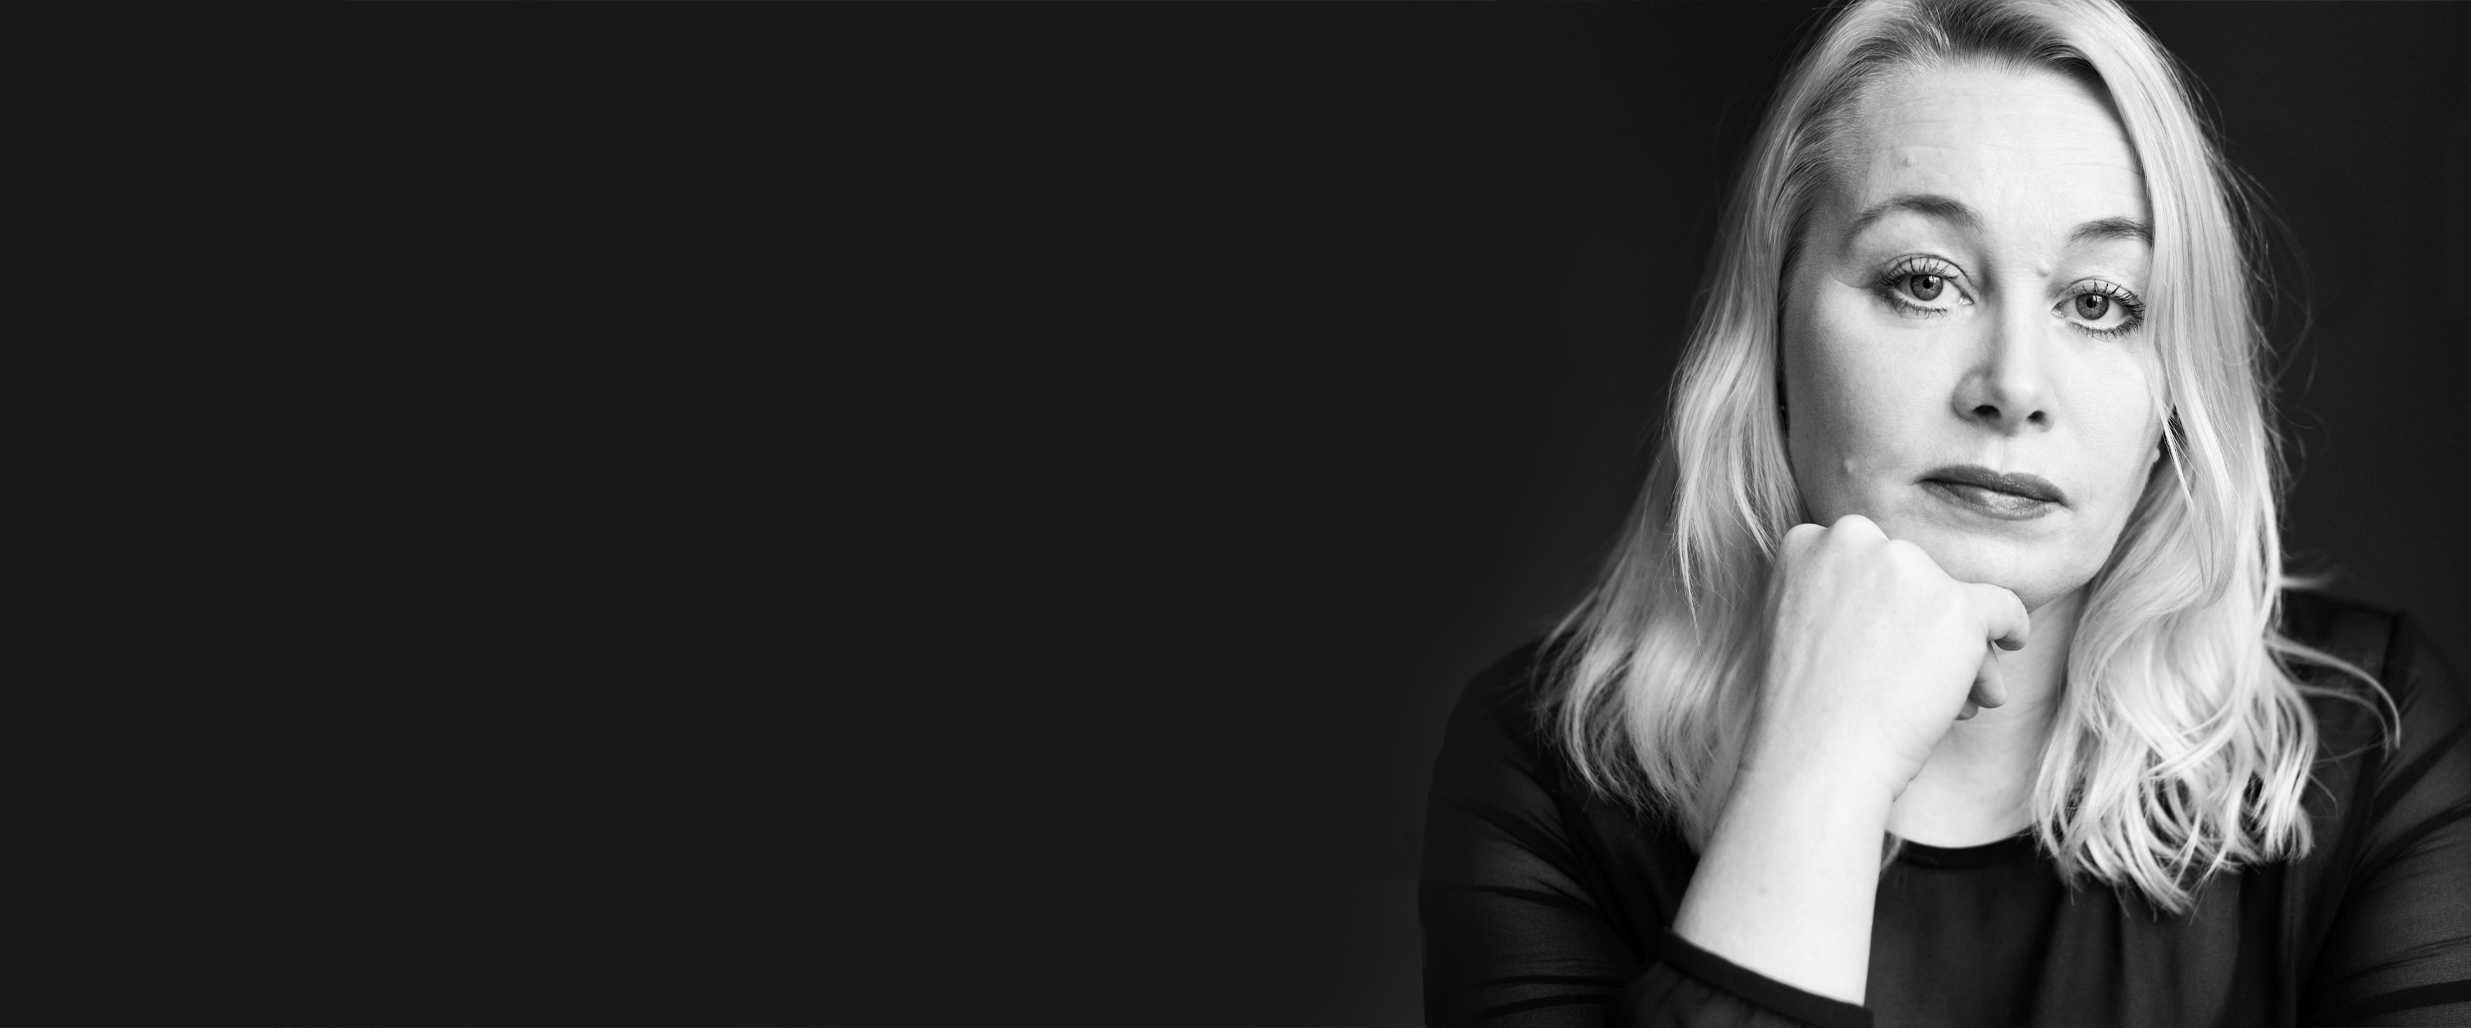 Ann Heberlein i ett svartvitt, allvarligt, porträtt mot en svart bakgrund.